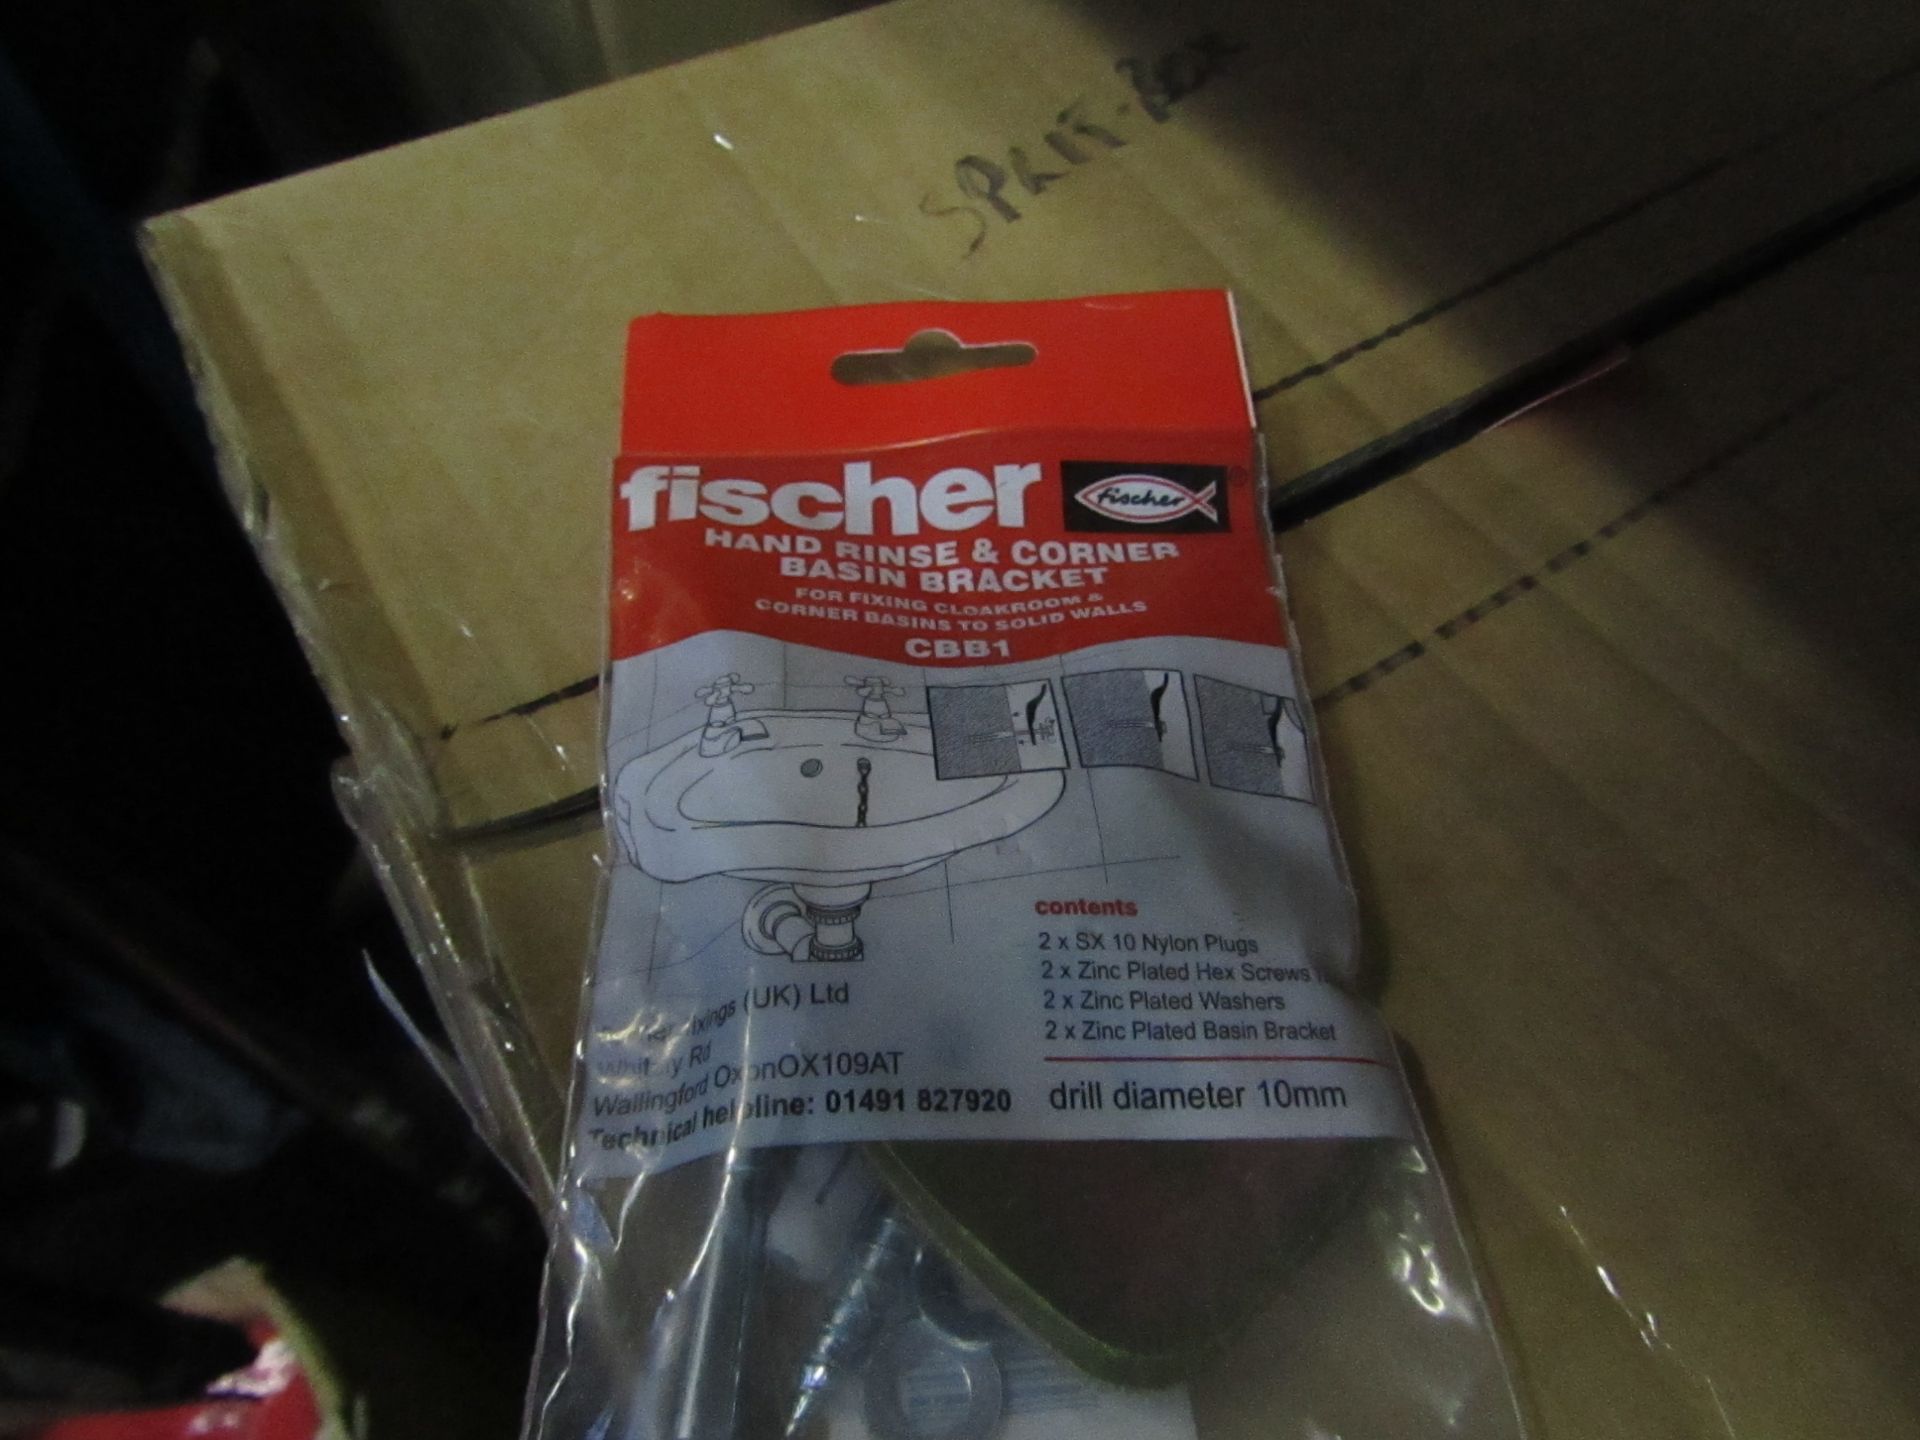 10x Fischer - Hand Rinse & Corner Basin Bracket Drill Diameter 10mm - New & Packaged.